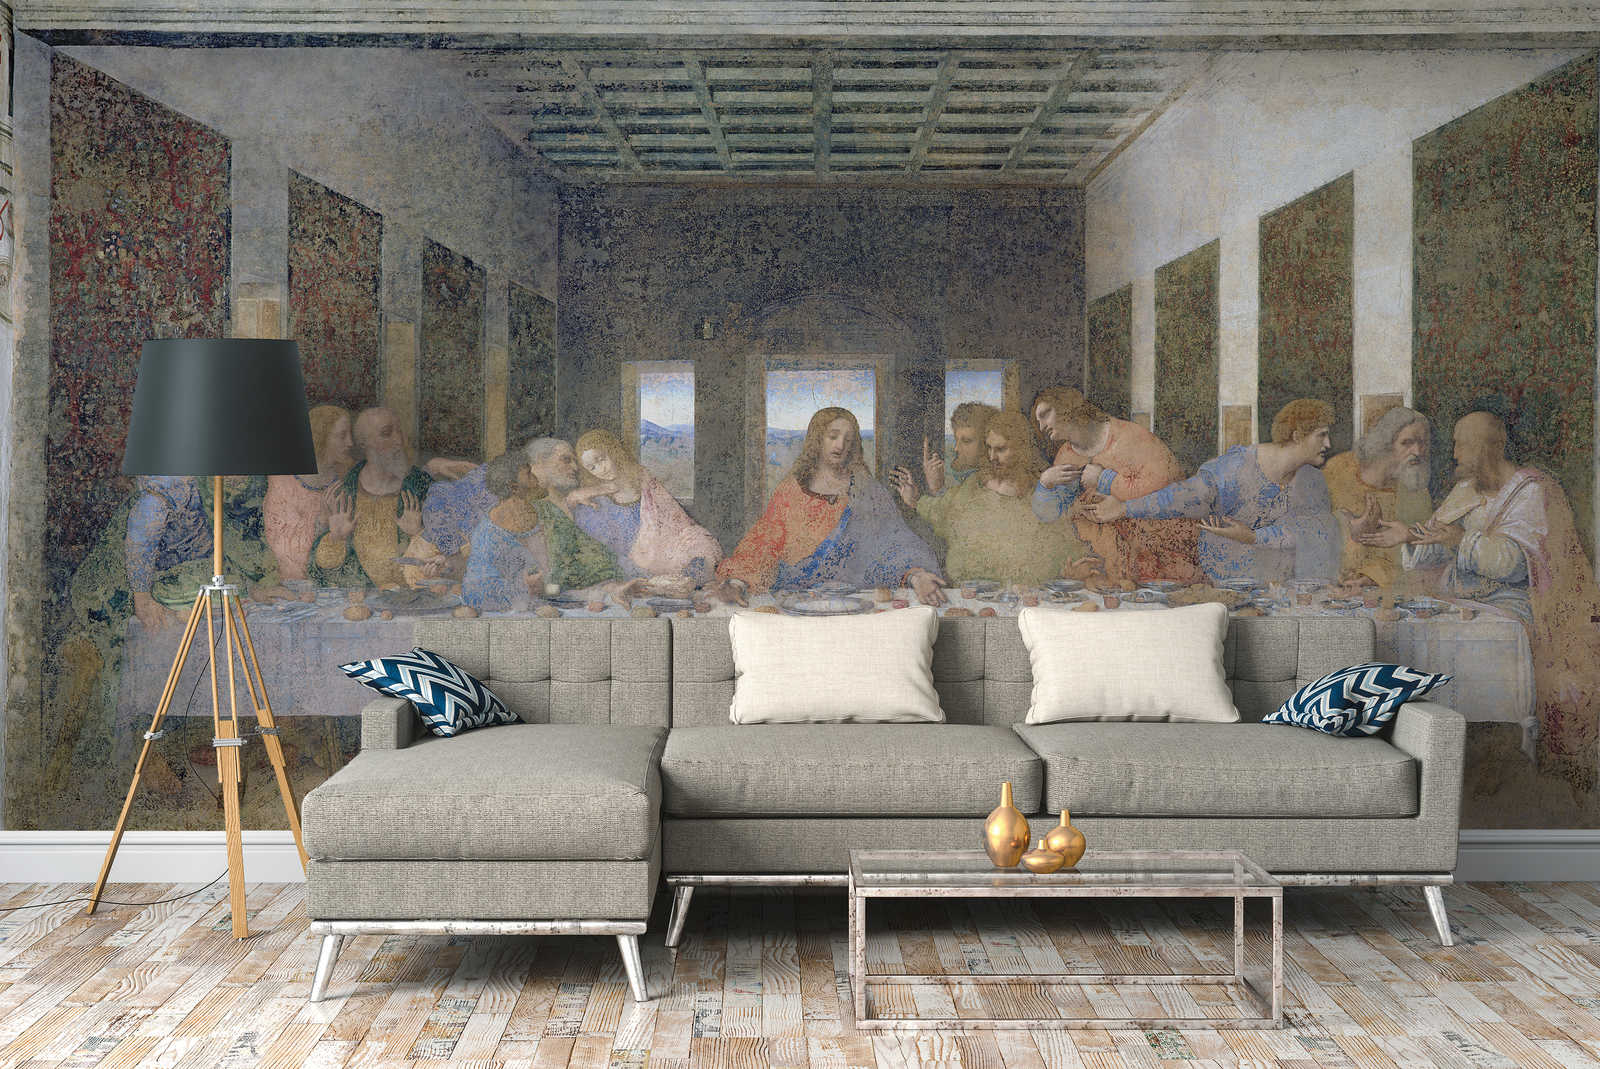             The Last Supper" mural by Leonardo da Vinci
        